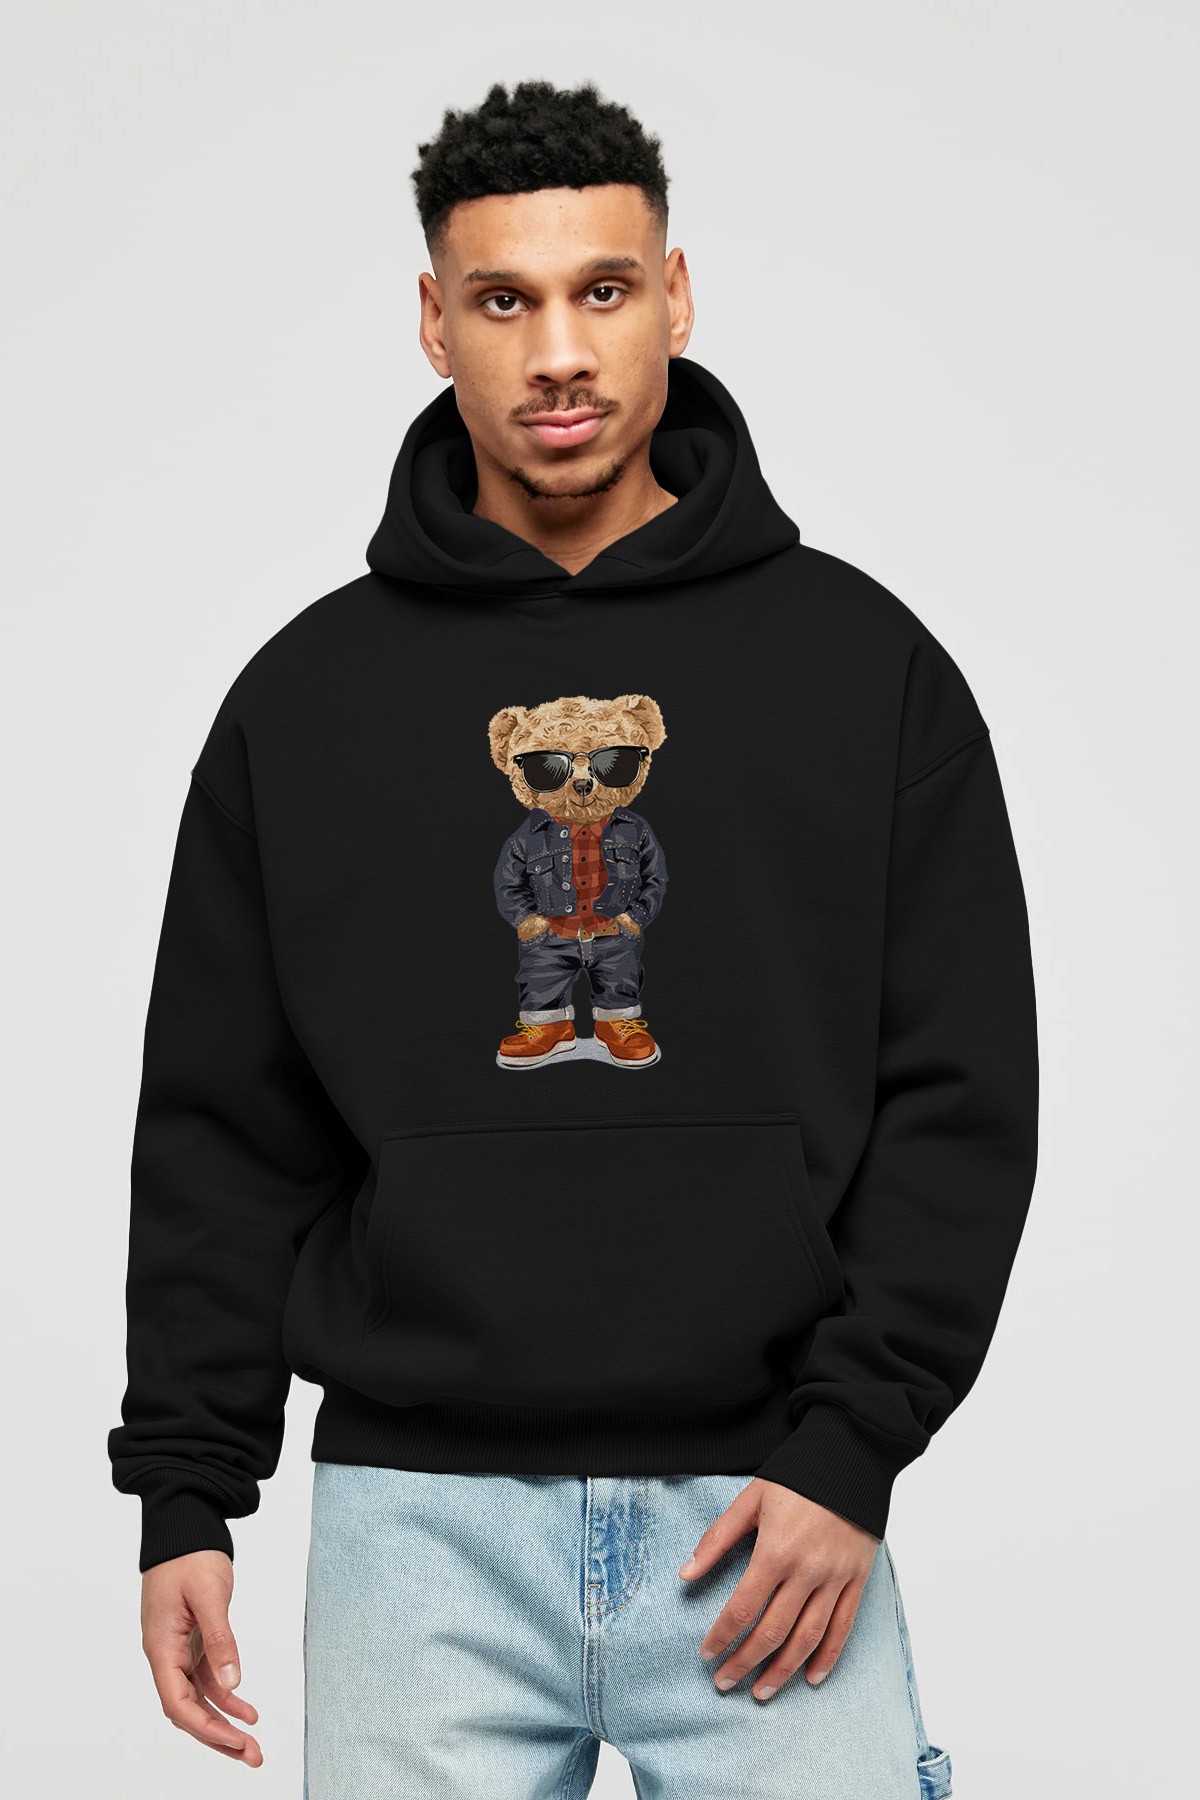 Teddy Bear Tarz Ön Baskılı Hoodie Oversize Kapüşonlu Sweatshirt Erkek Kadın Unisex